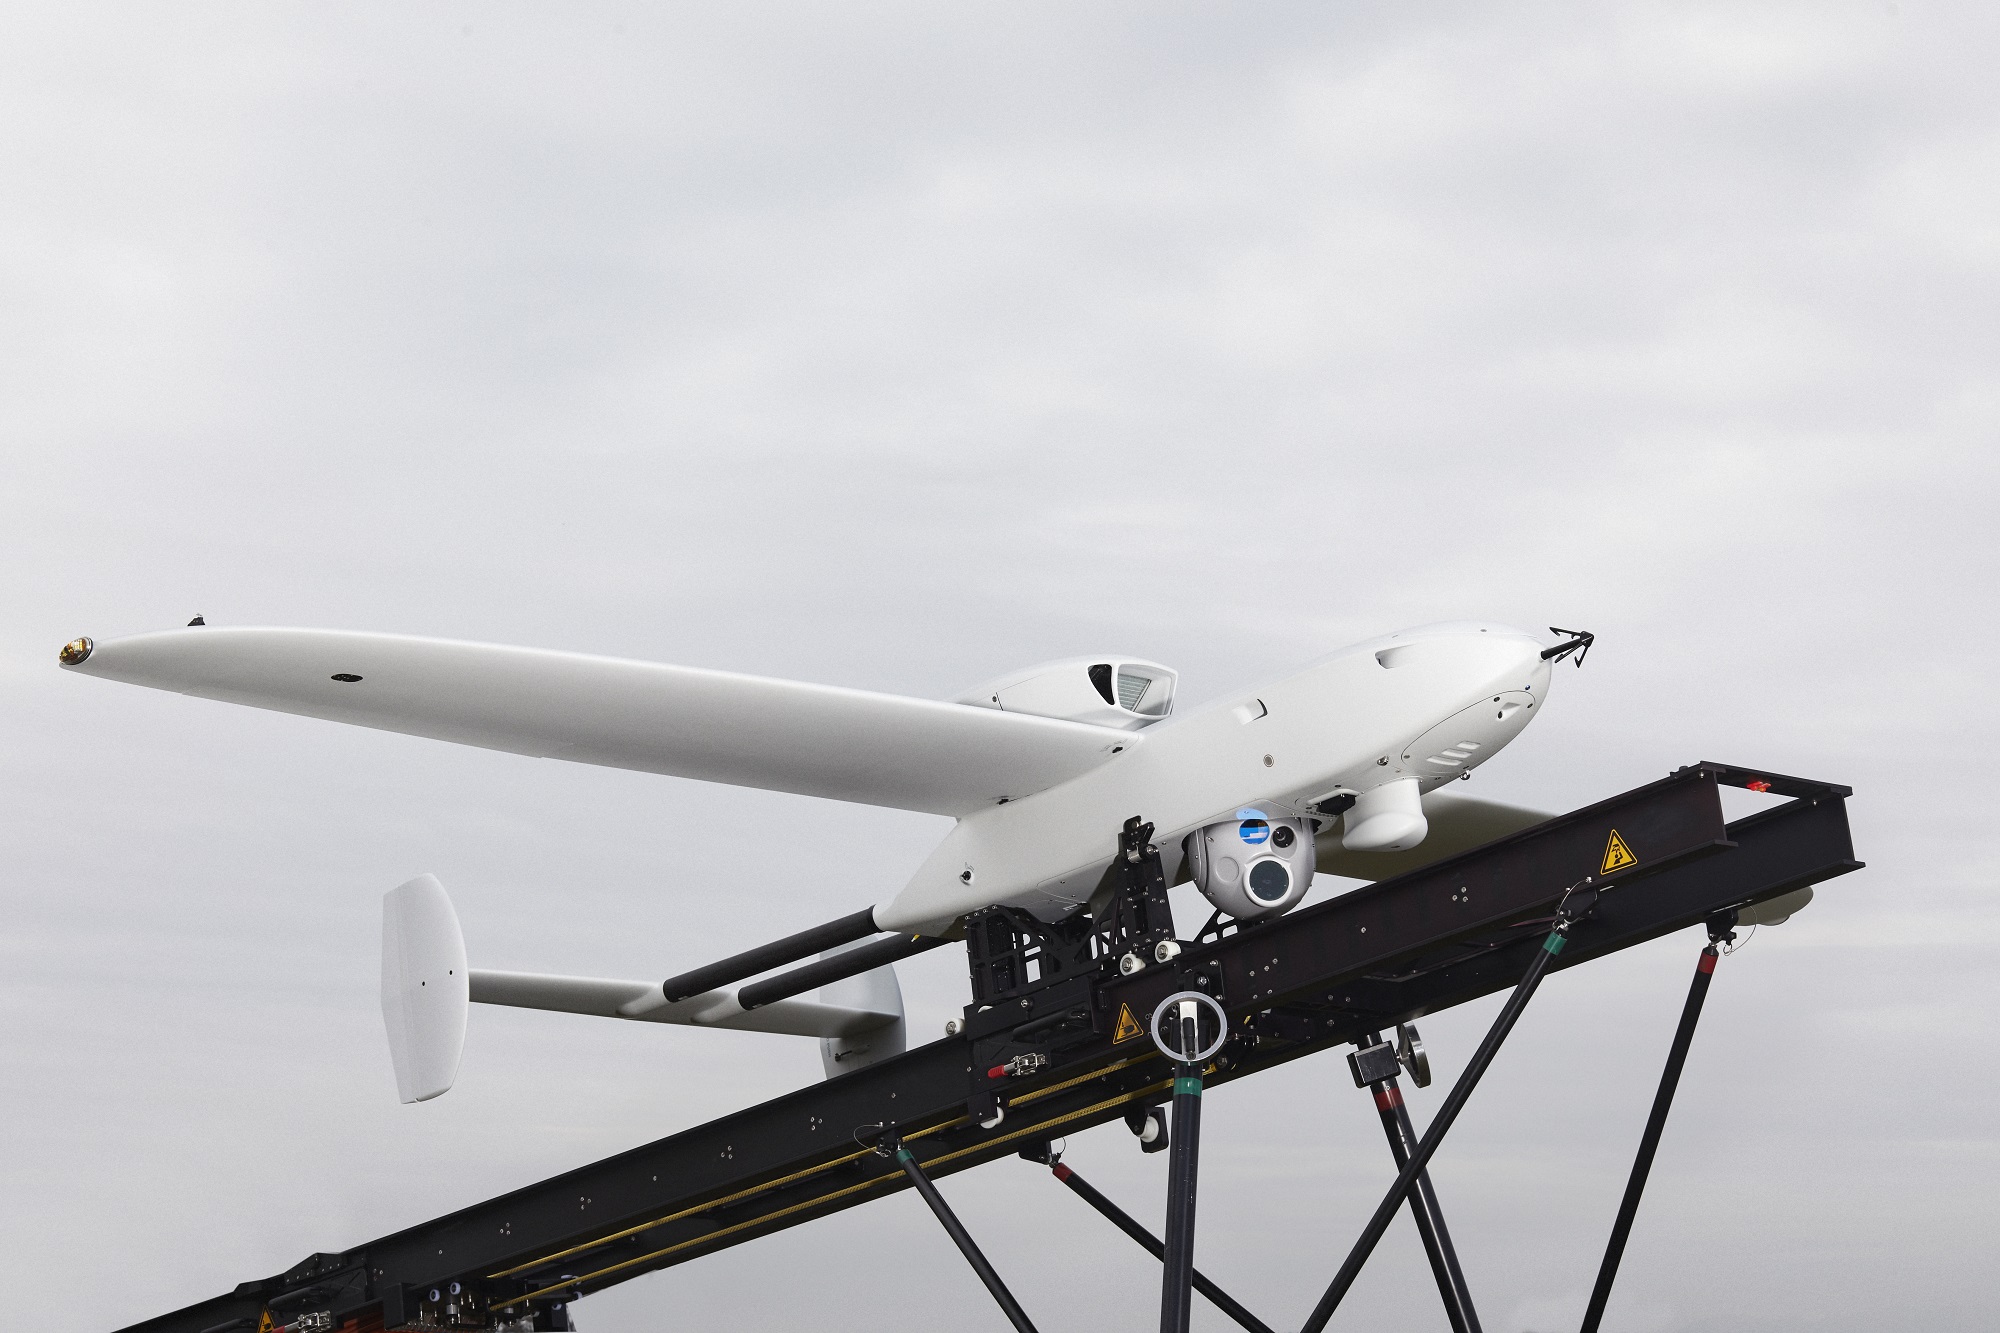 Alemania compró a Rheinmetall para Ucrania modernos UAV de reconocimiento Luna NG, los drones pueden permanecer en el aire más de 12 horas y transmitir información a una distancia de más de 100 kilómetros